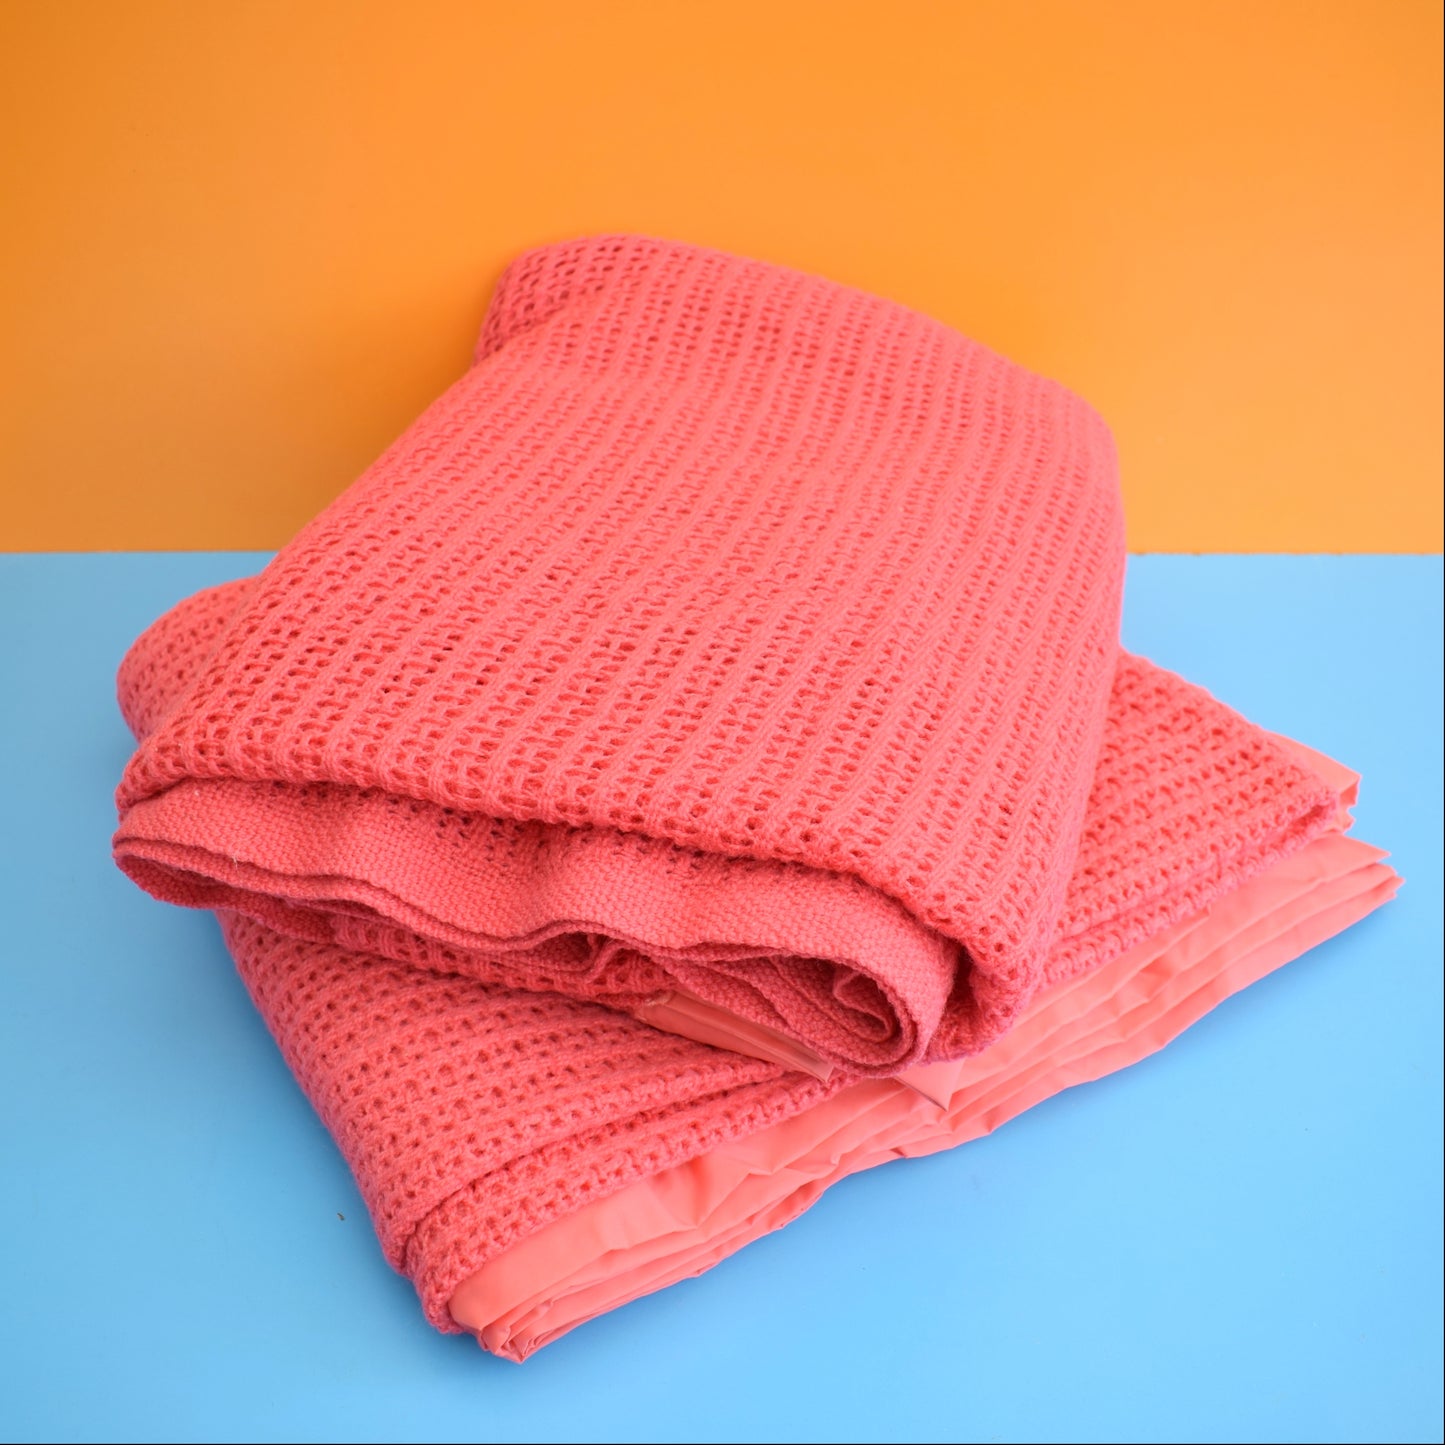 Vintage 1960s Blanket - Raspberry Wool